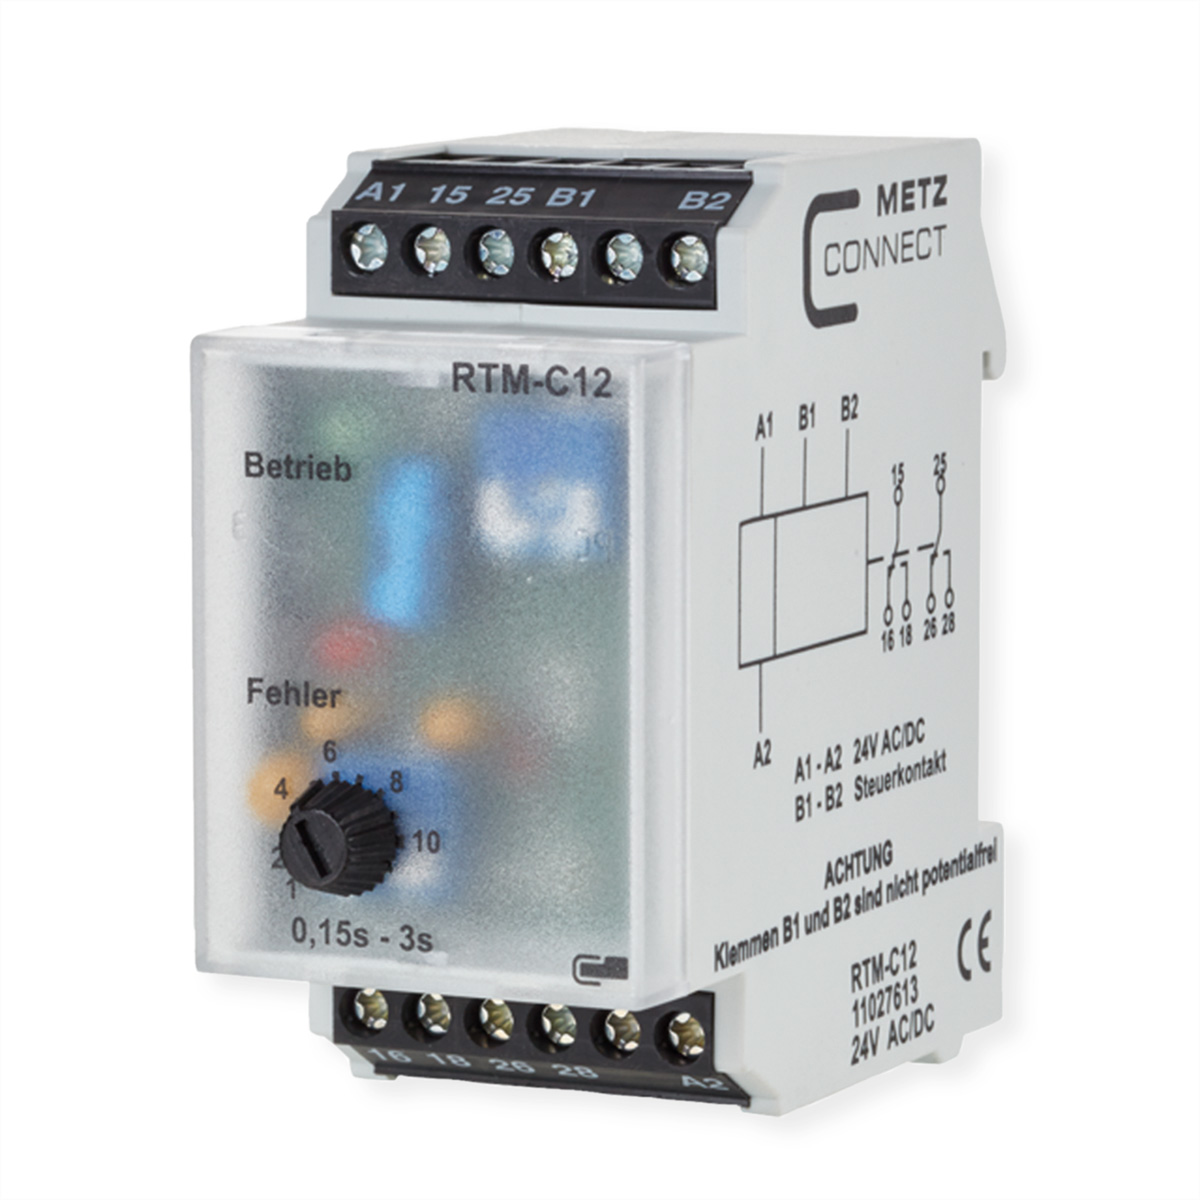 METZ CONNECT RTM-C12, 24 V AC/DC Zeitrelais